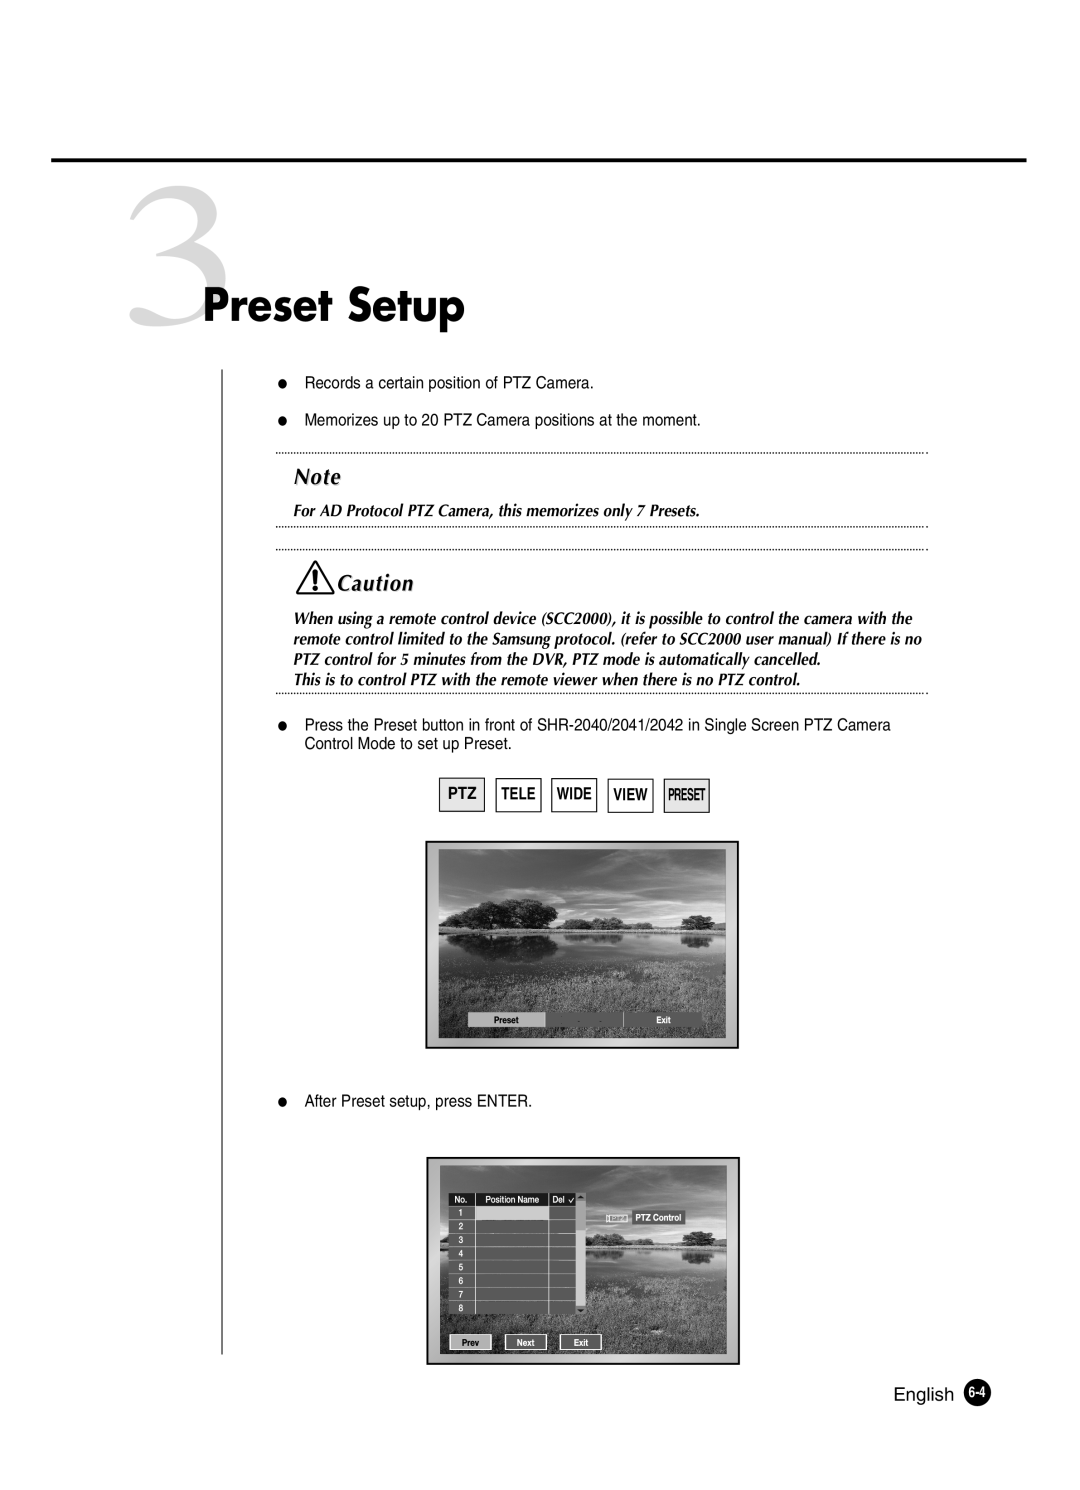 Samsung SHR-2042P 3Preset Setup, For AD Protocol PTZ Camera, this memorizes only 7 Presets, Ptz Tele Wide View Preset 